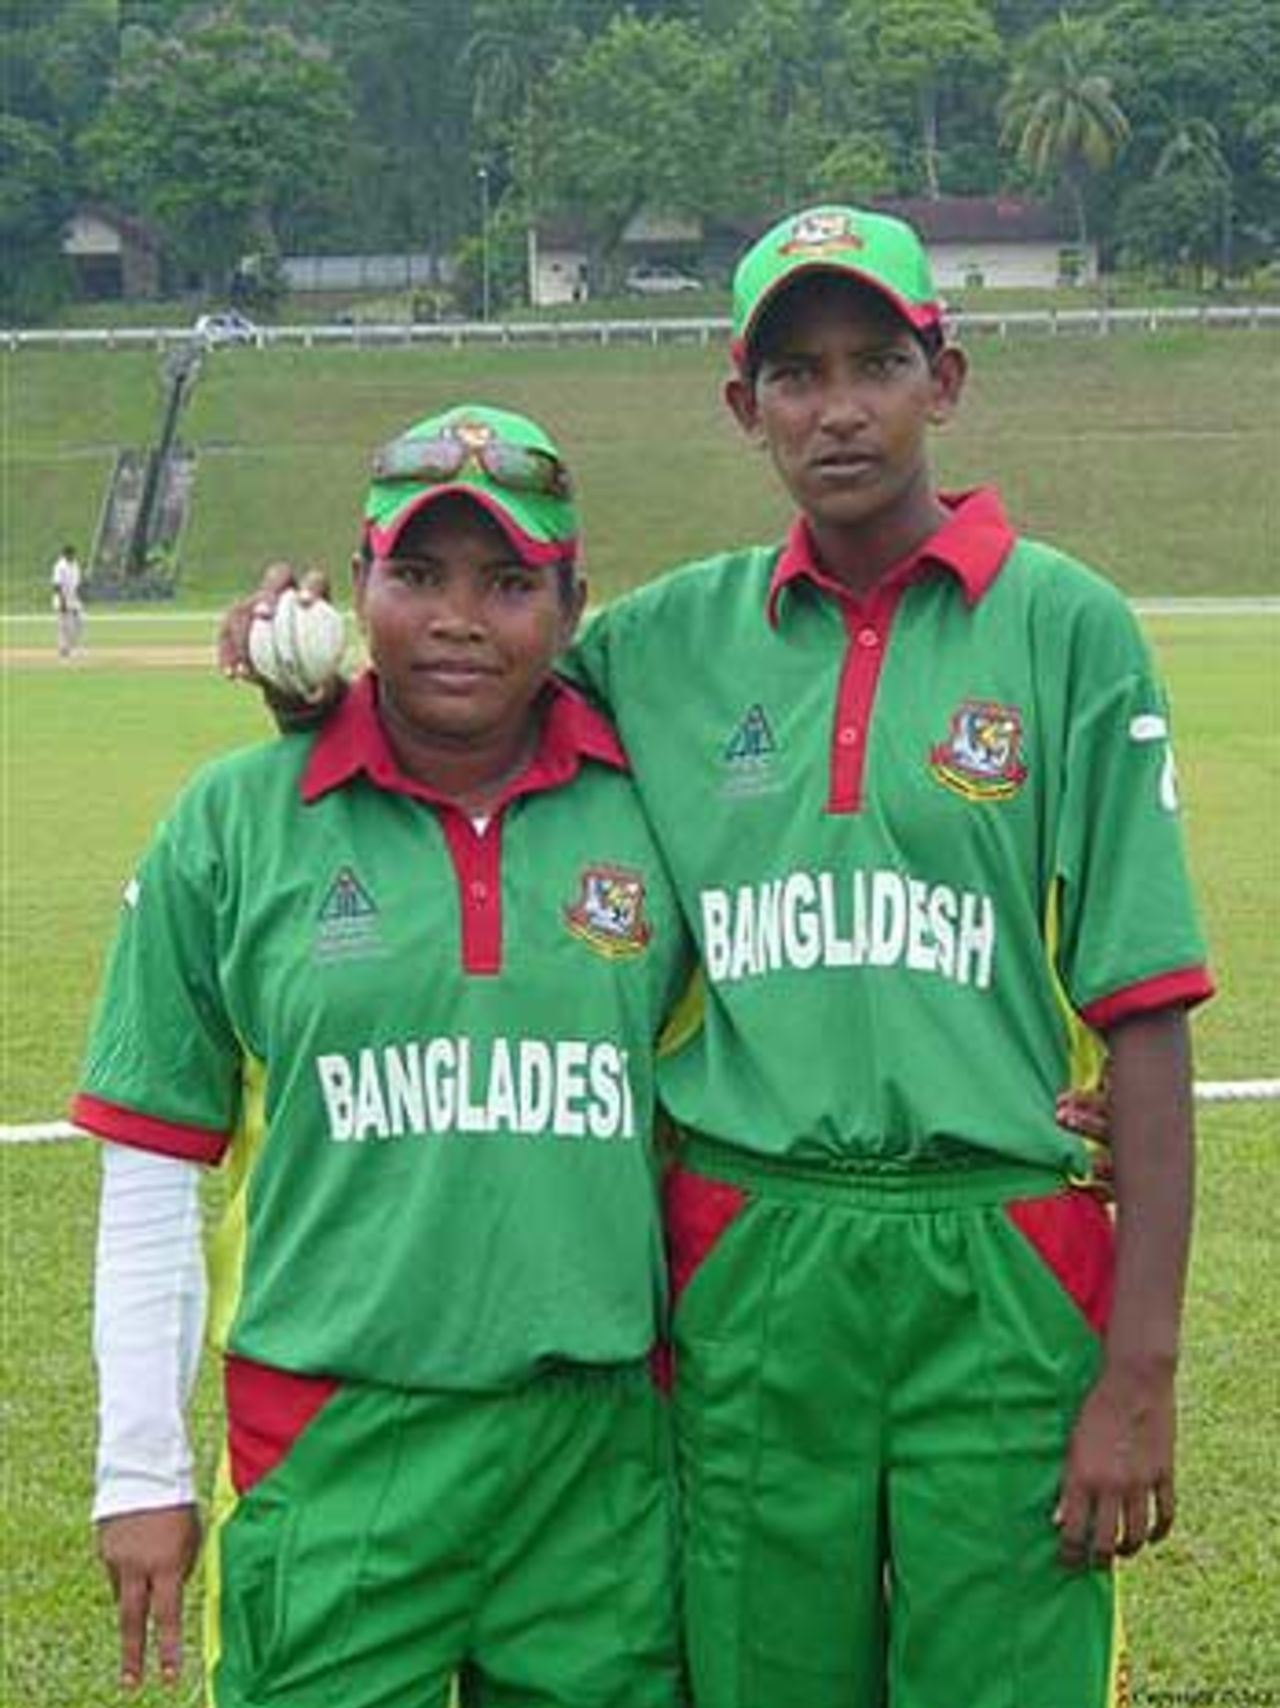 Bangladesh women cricketers, Shamima Akhter and Panna Ghosh, Johor, July 2007